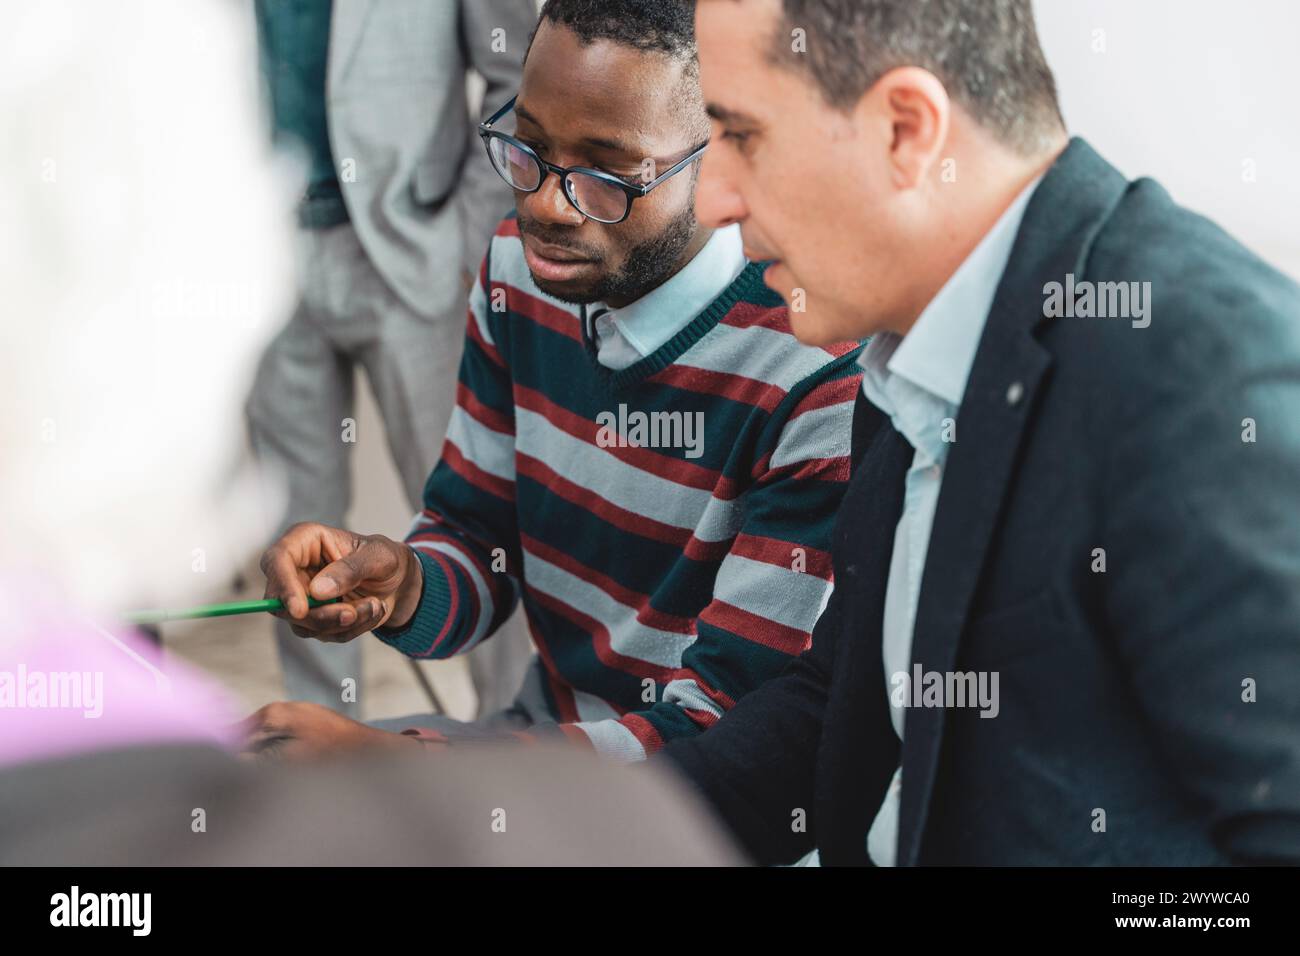 Une paire concentrée de professionnels, un homme africain et un homme caucasien, examinent de près les documents, discutent des stratégies dans une réunion d'équipe, leur Banque D'Images